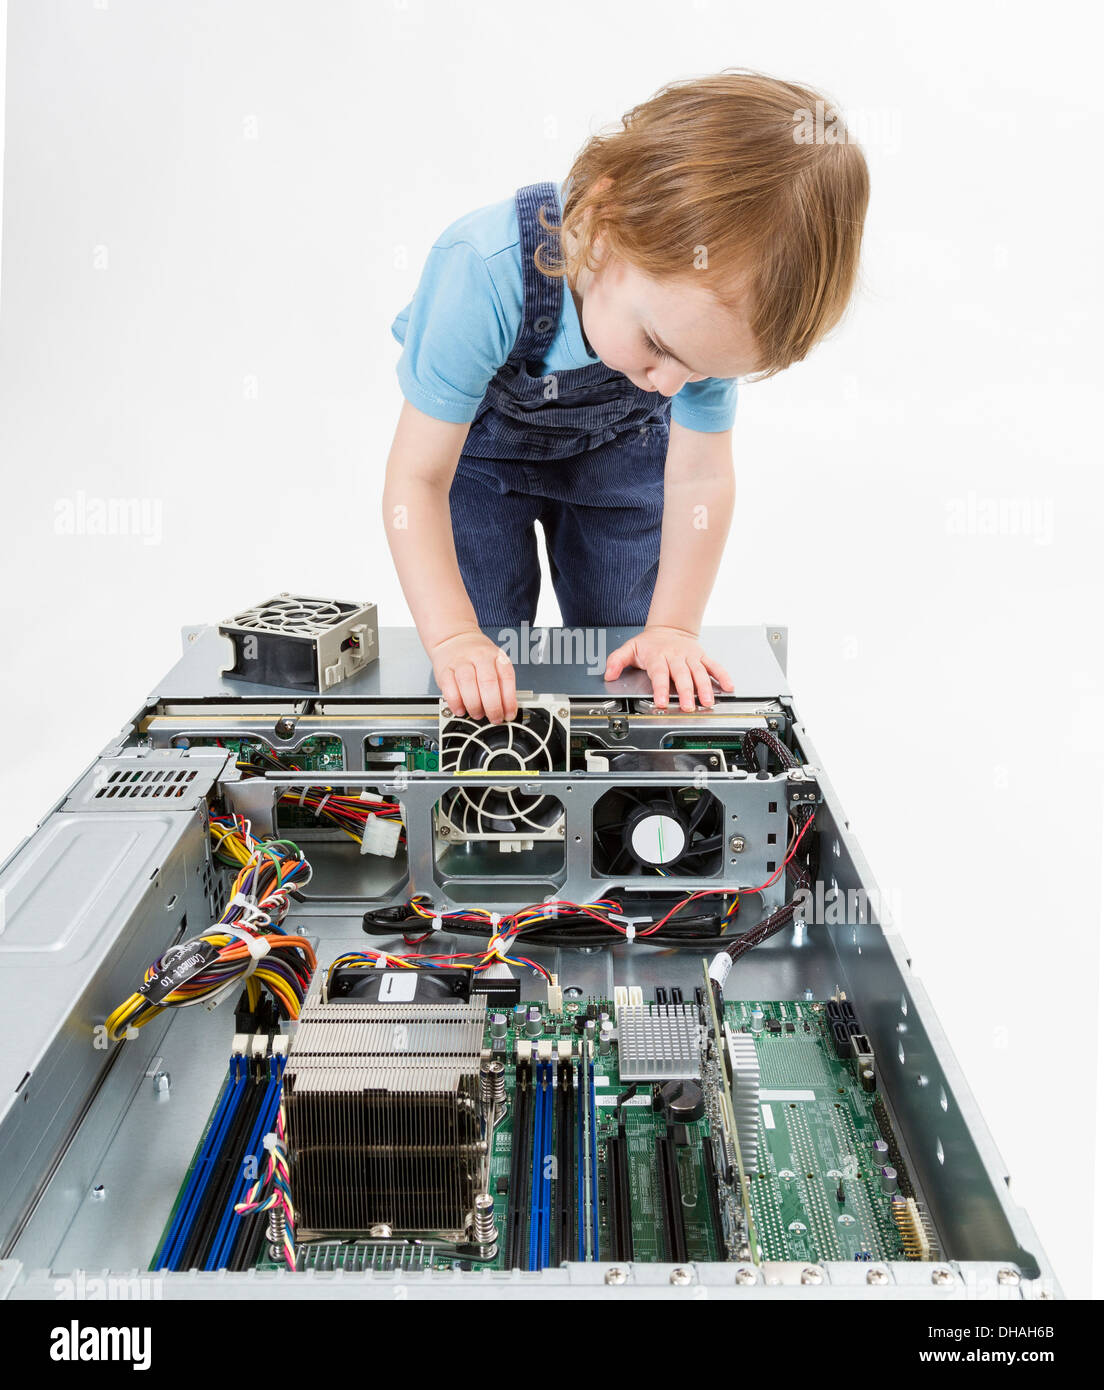 Niño trabajando en un servidor de red. Foto de estudio en fondo gris Foto de stock